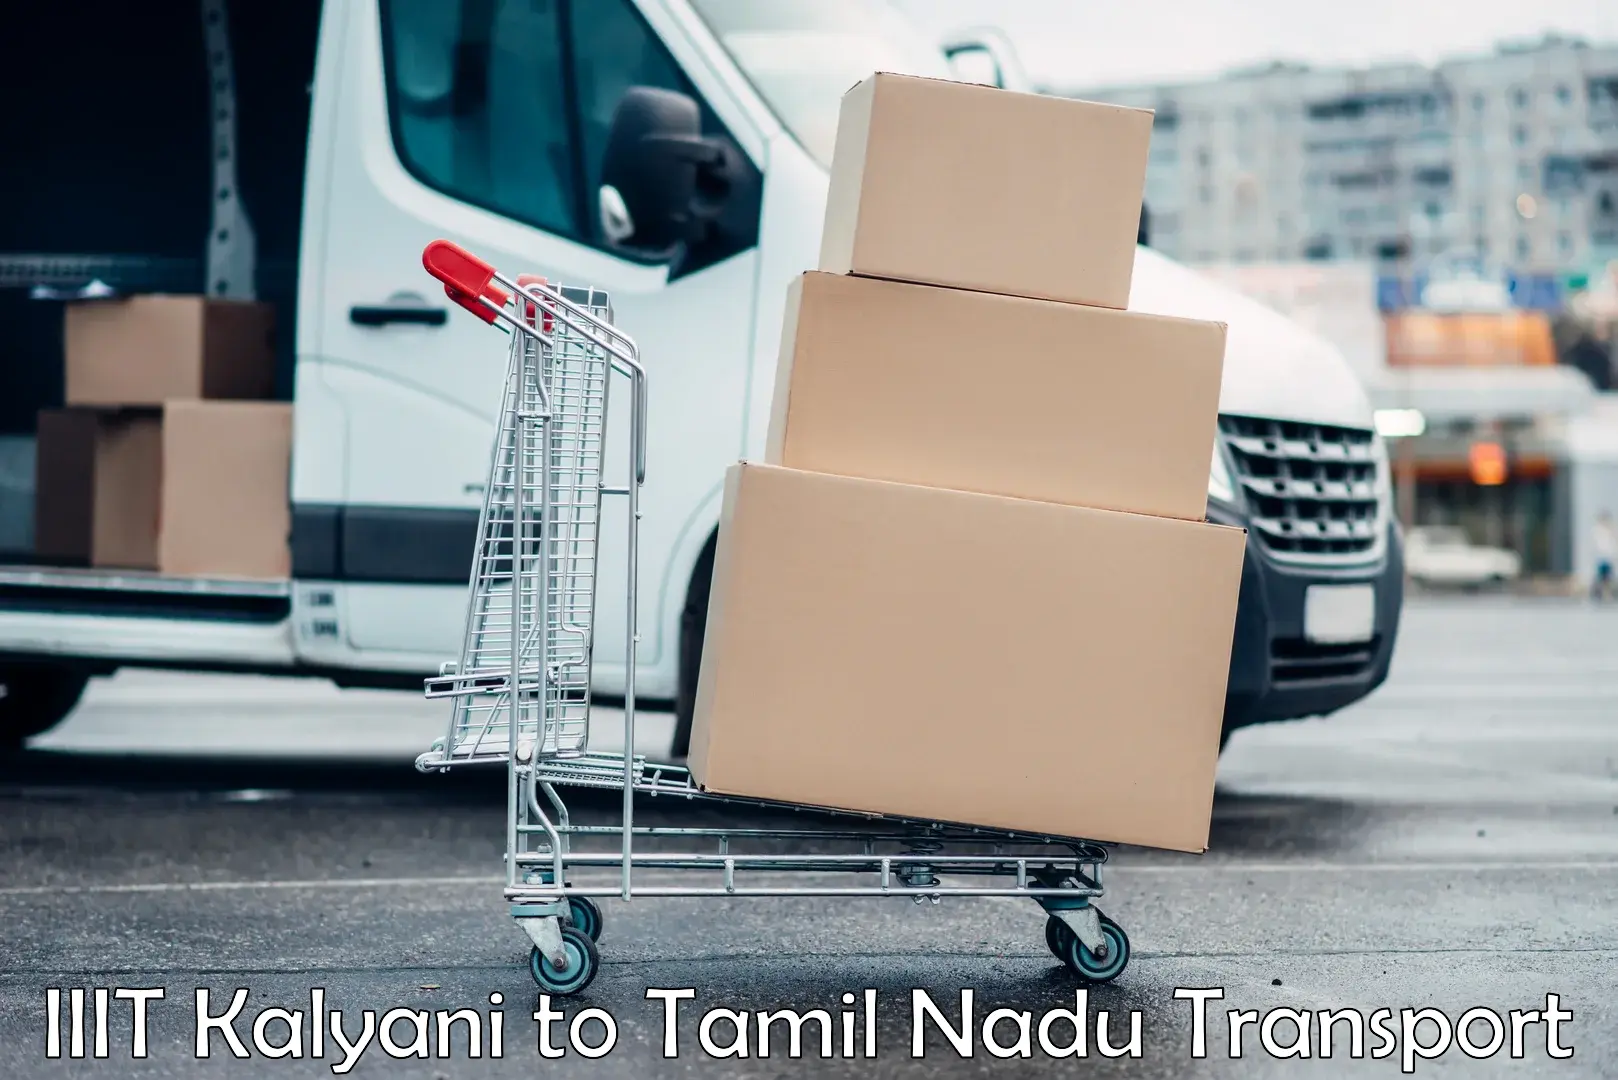 India truck logistics services IIIT Kalyani to Tiruvannamalai